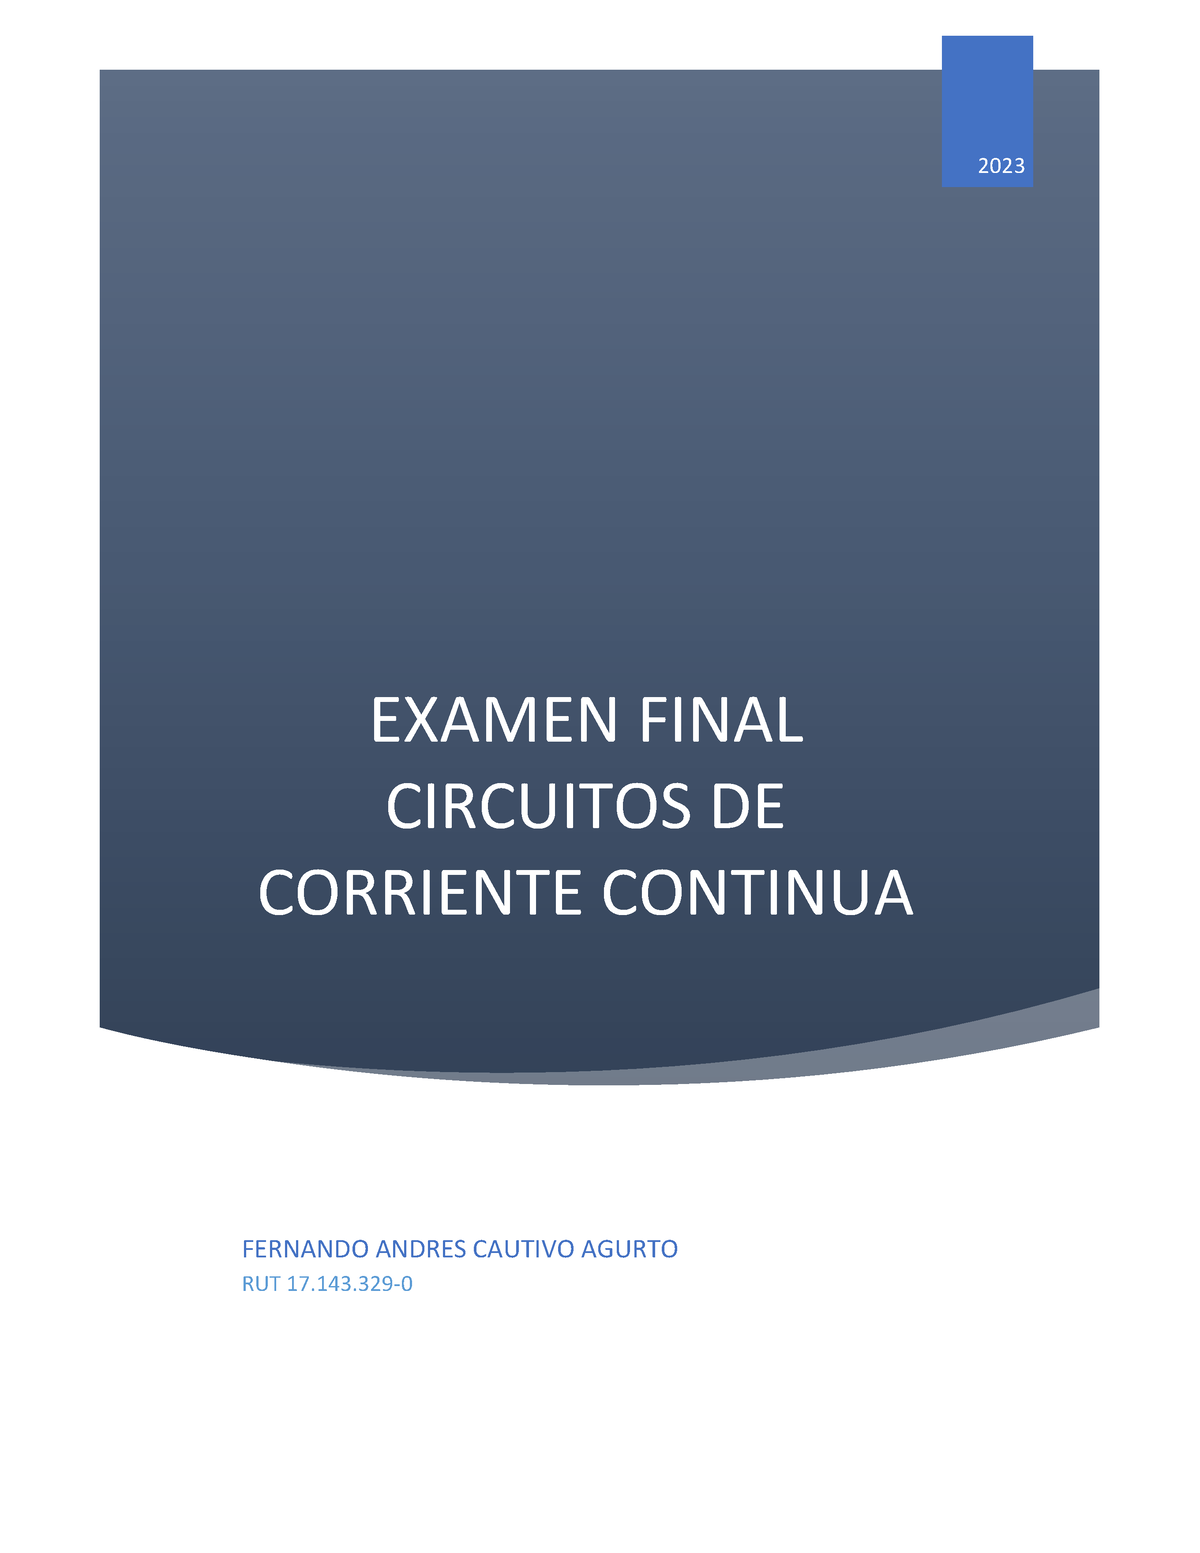 Circuitos De Corriente Continua Examen Final Examen Final Circuitos De Corriente Continua 2023 3287